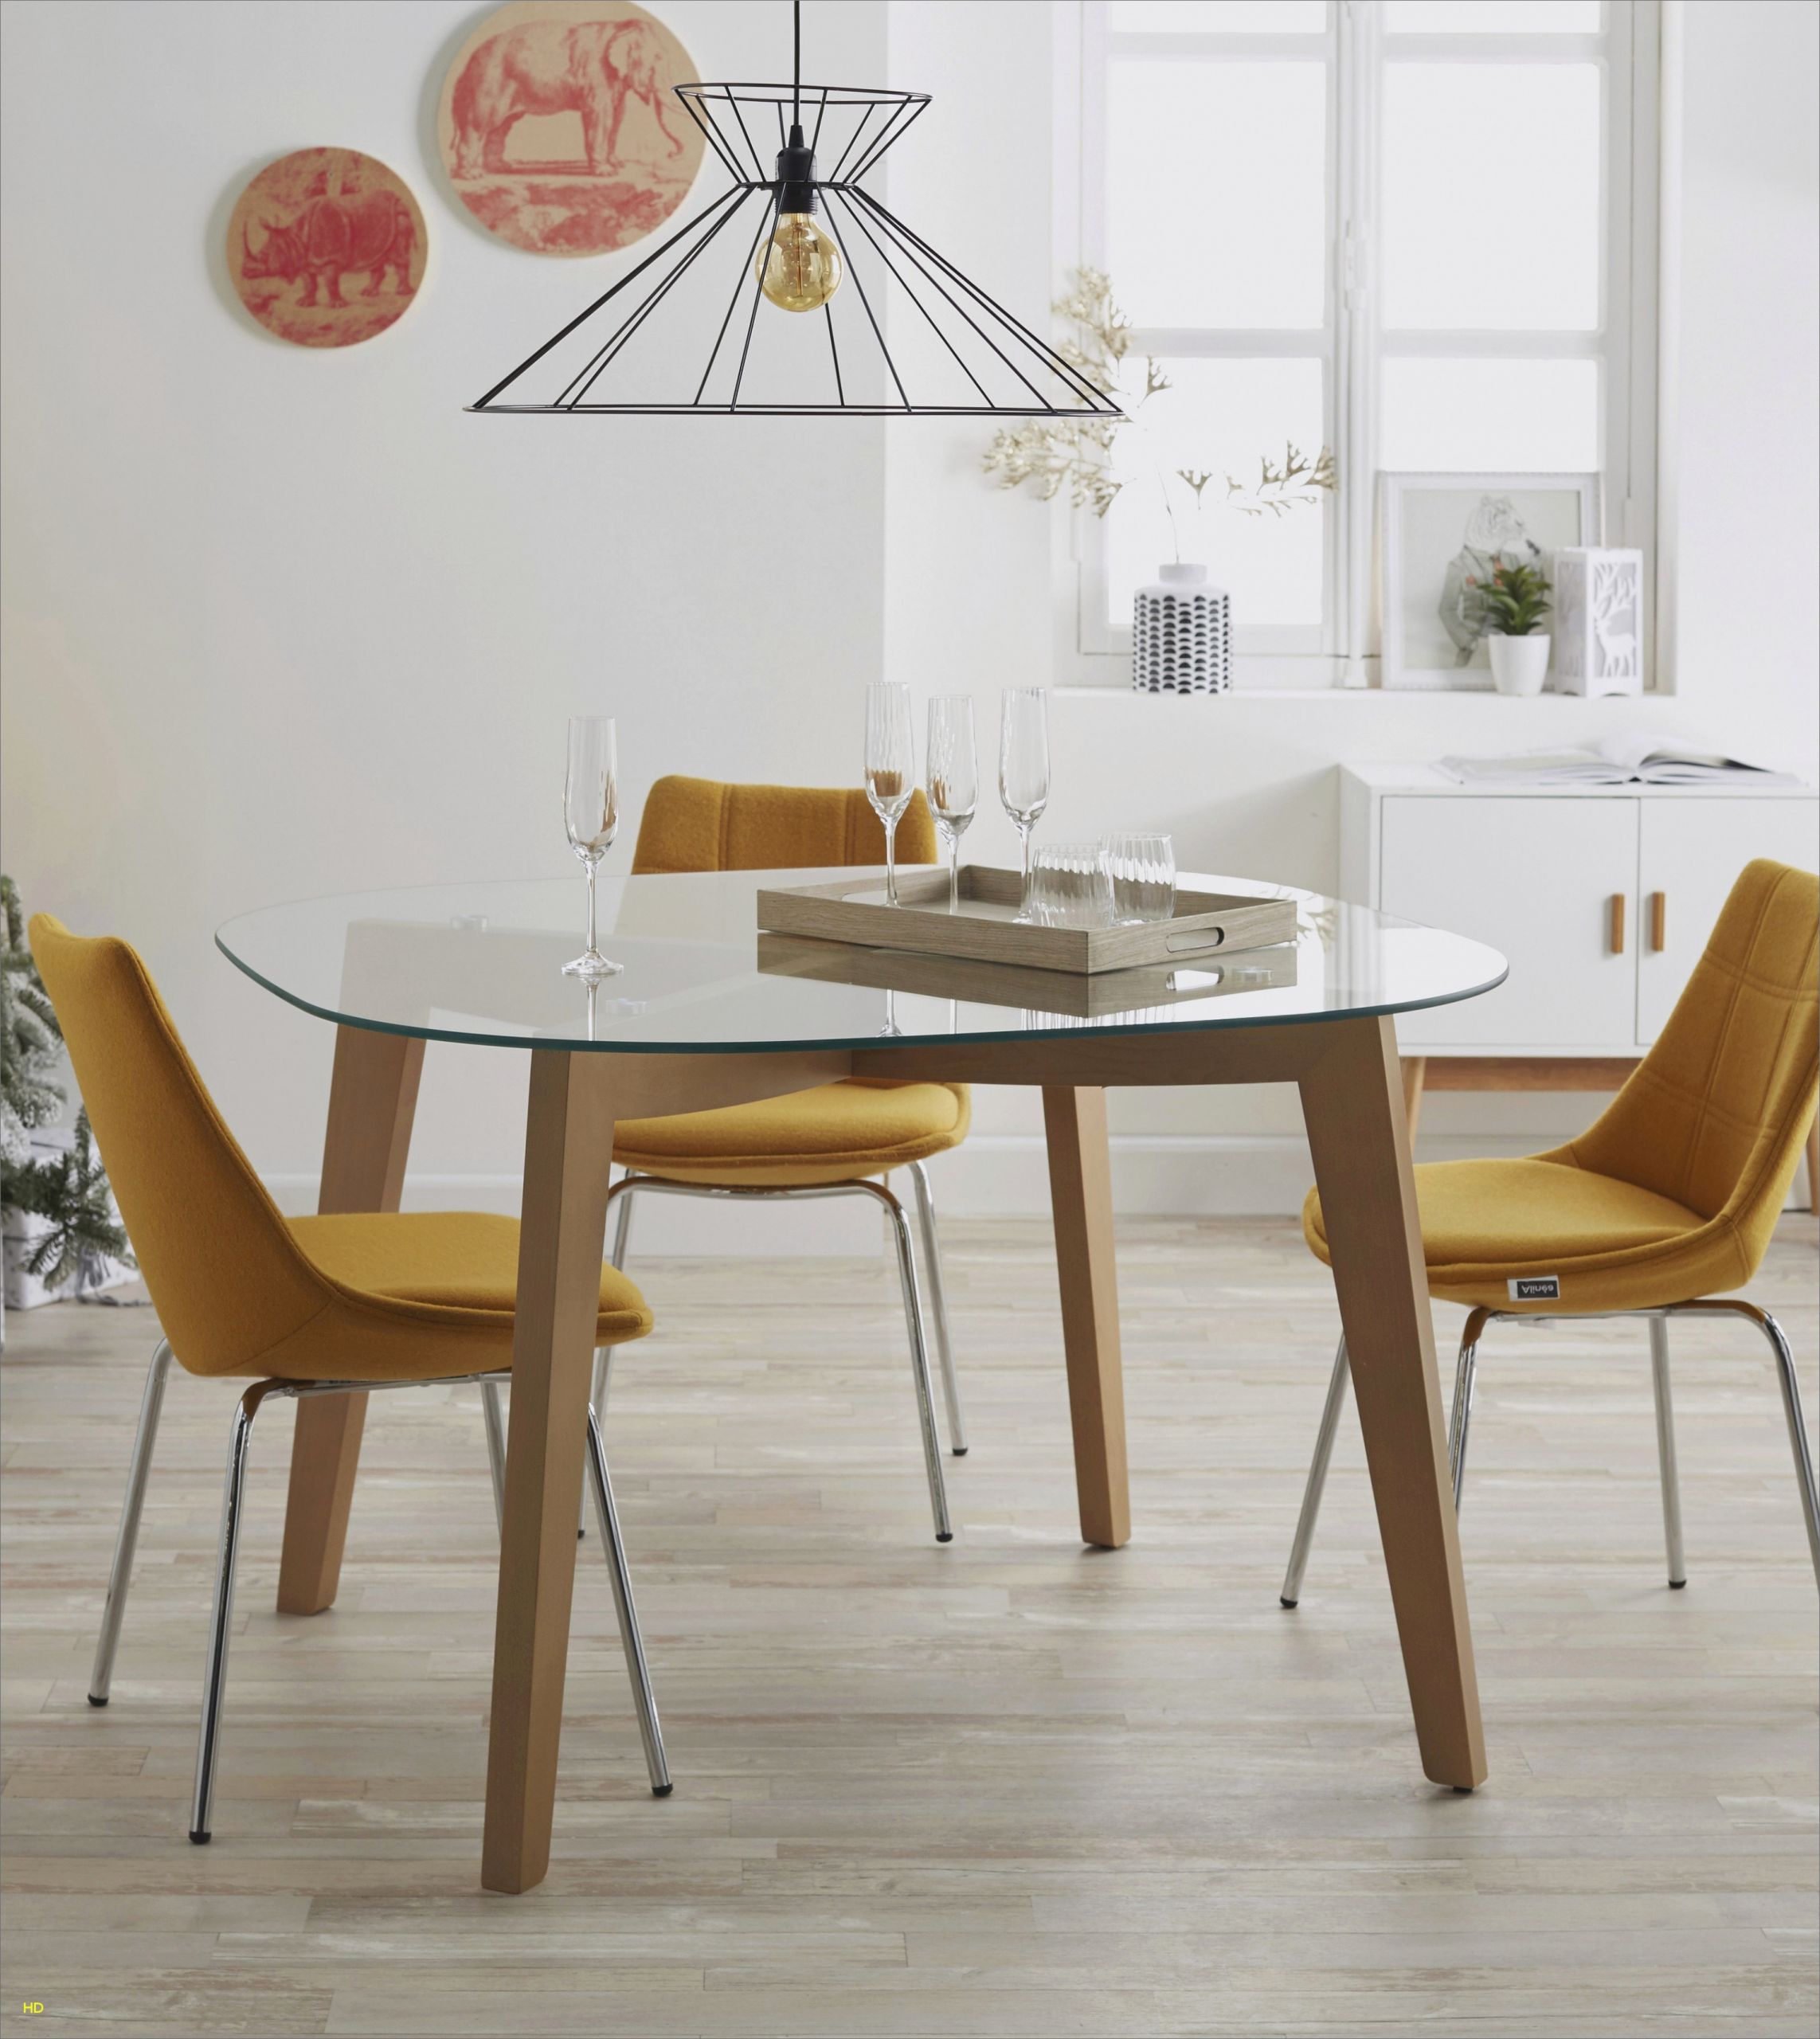 chaise cuisine exceptionnel 55 inspire chaise de cuisine pas cher des chaise cuisine